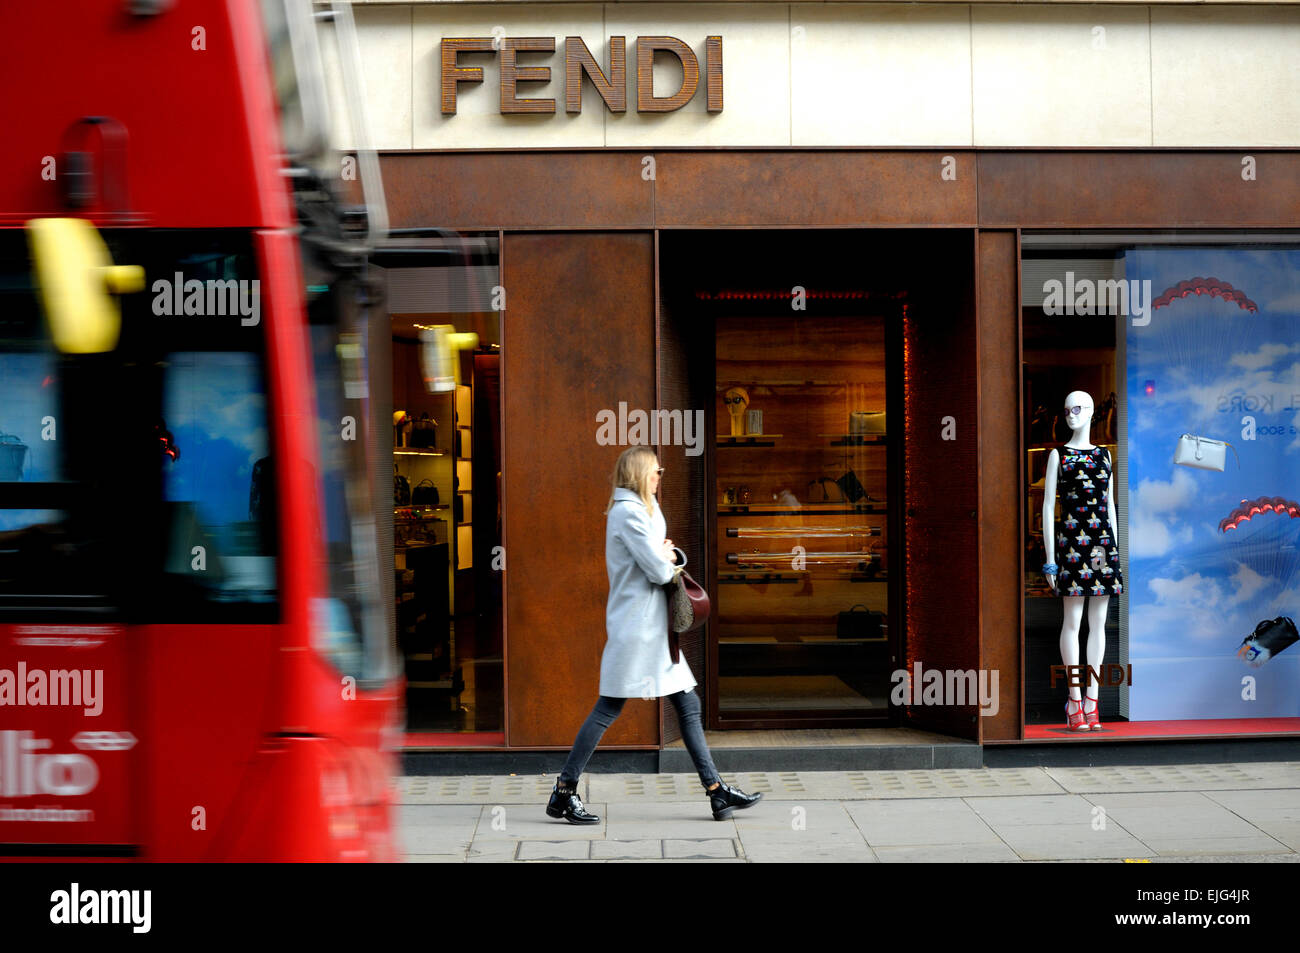 FENDI OPENS NEW SLOANE STREET BOUTIQUE IN LONDON